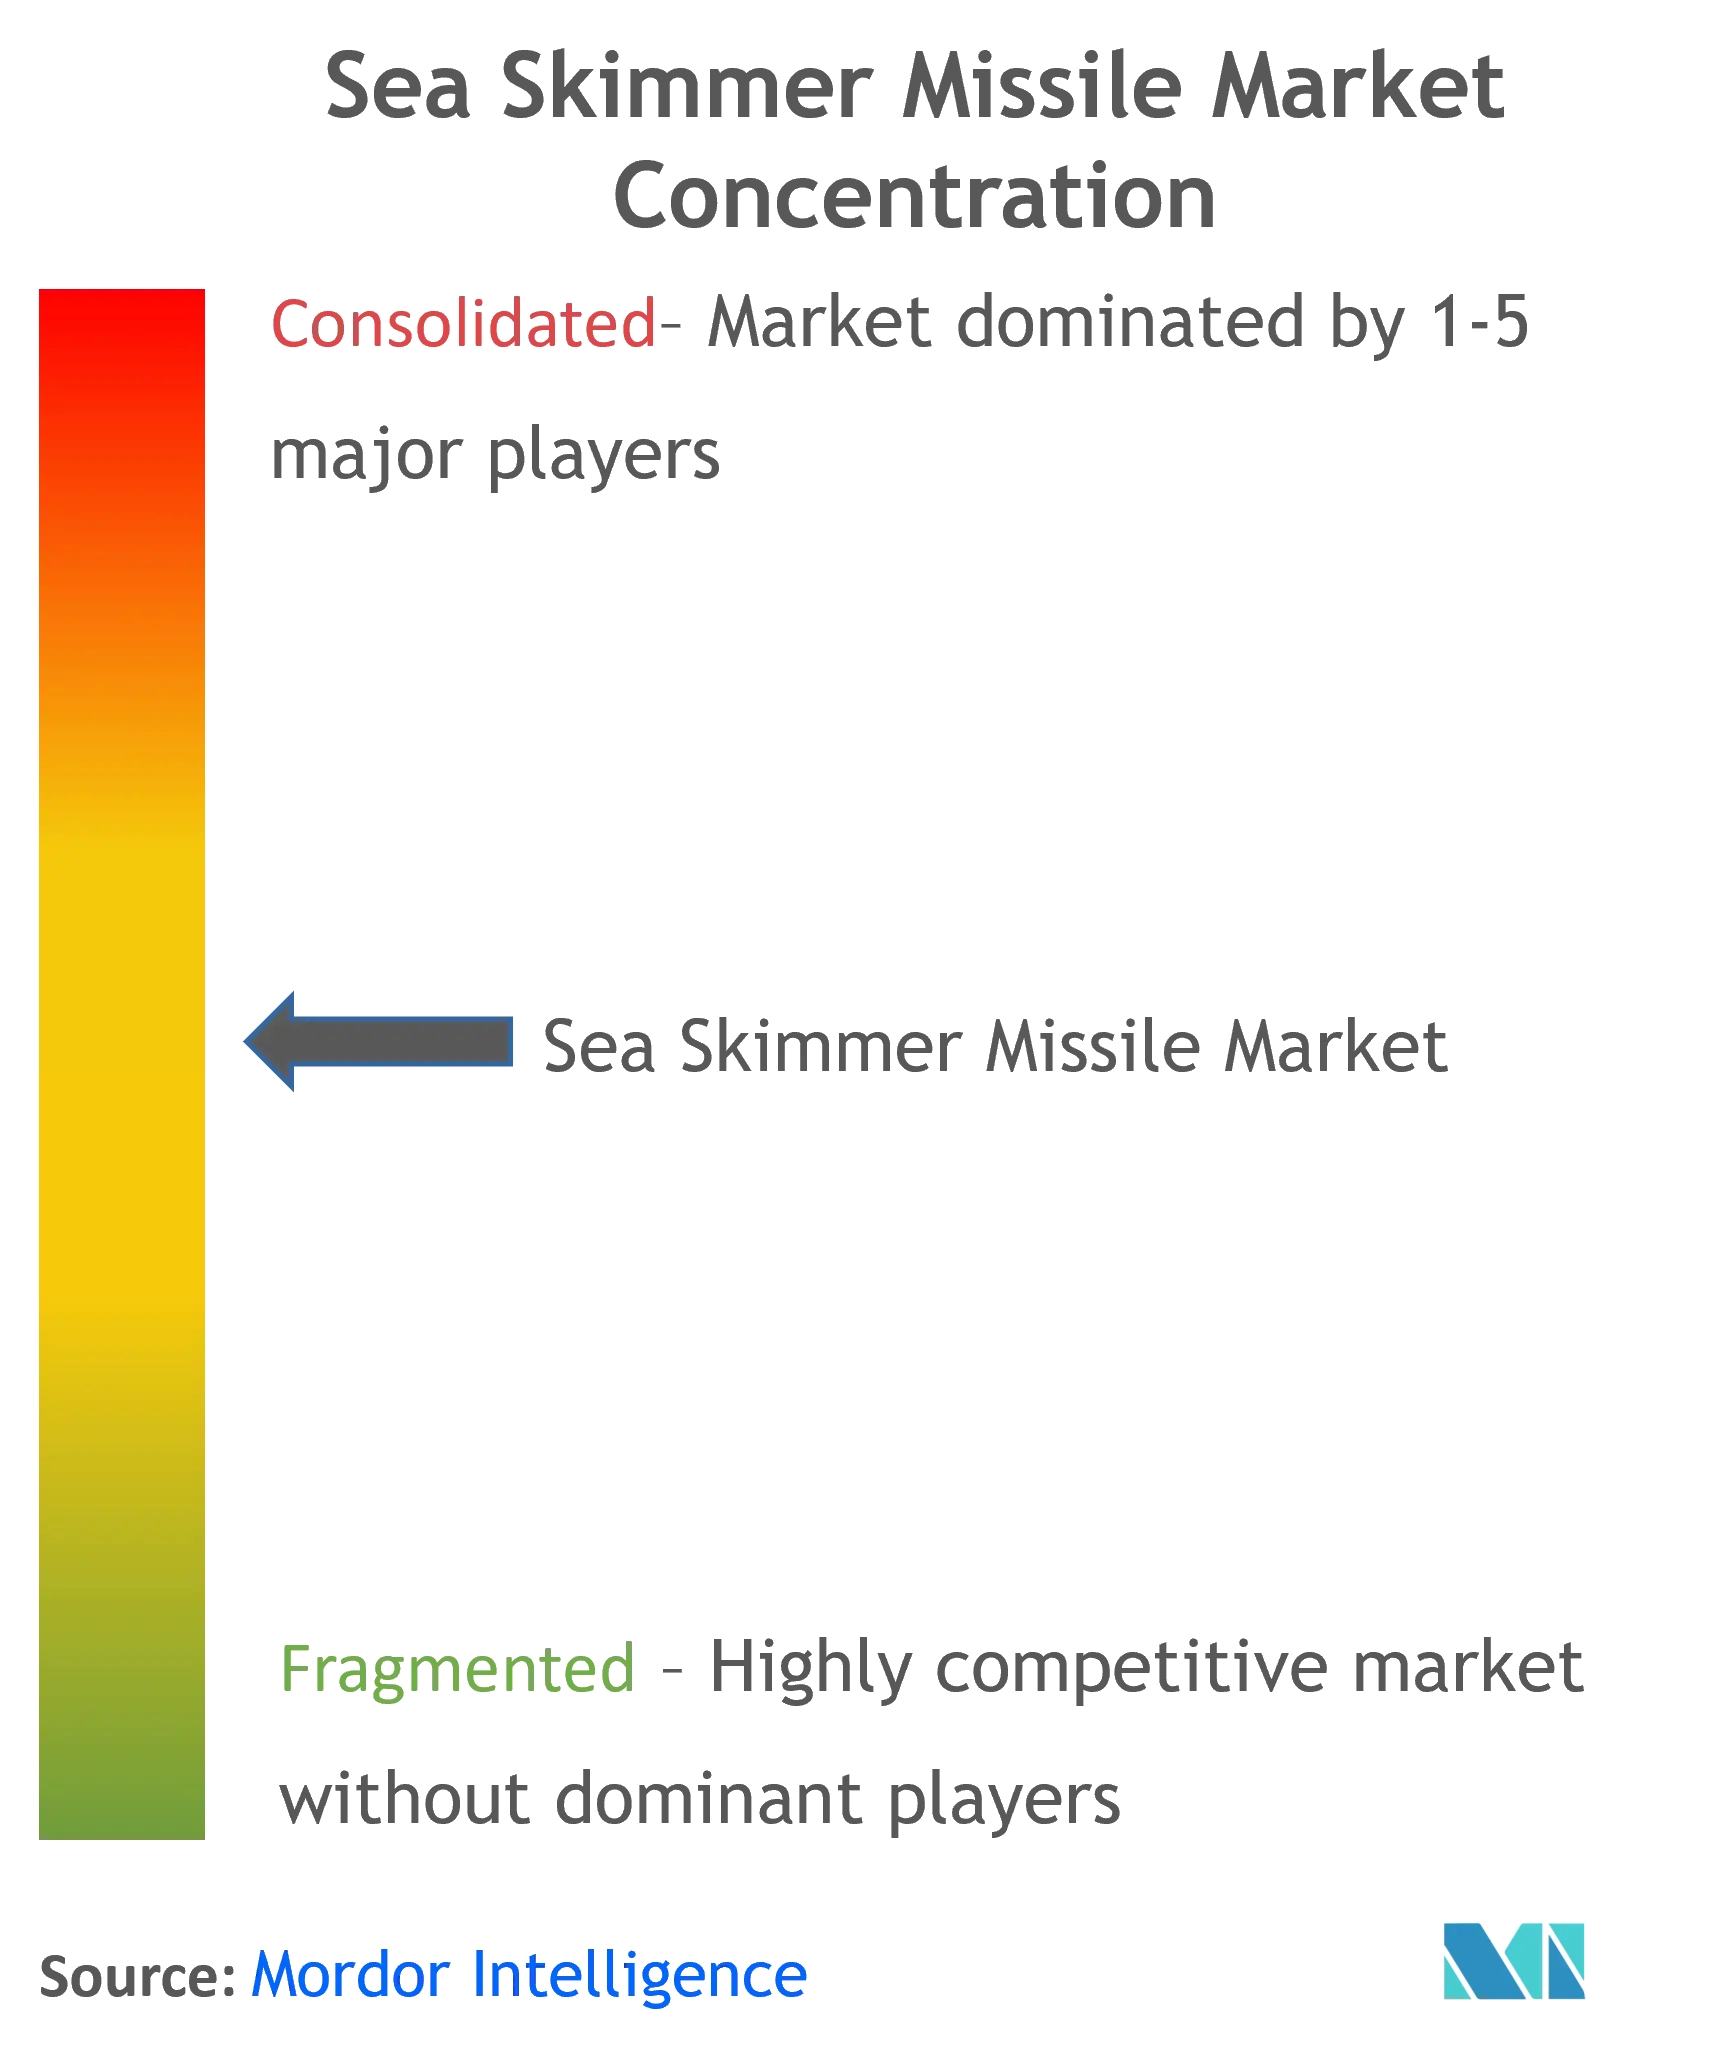 Sea Skimmer Missile Market Concentration